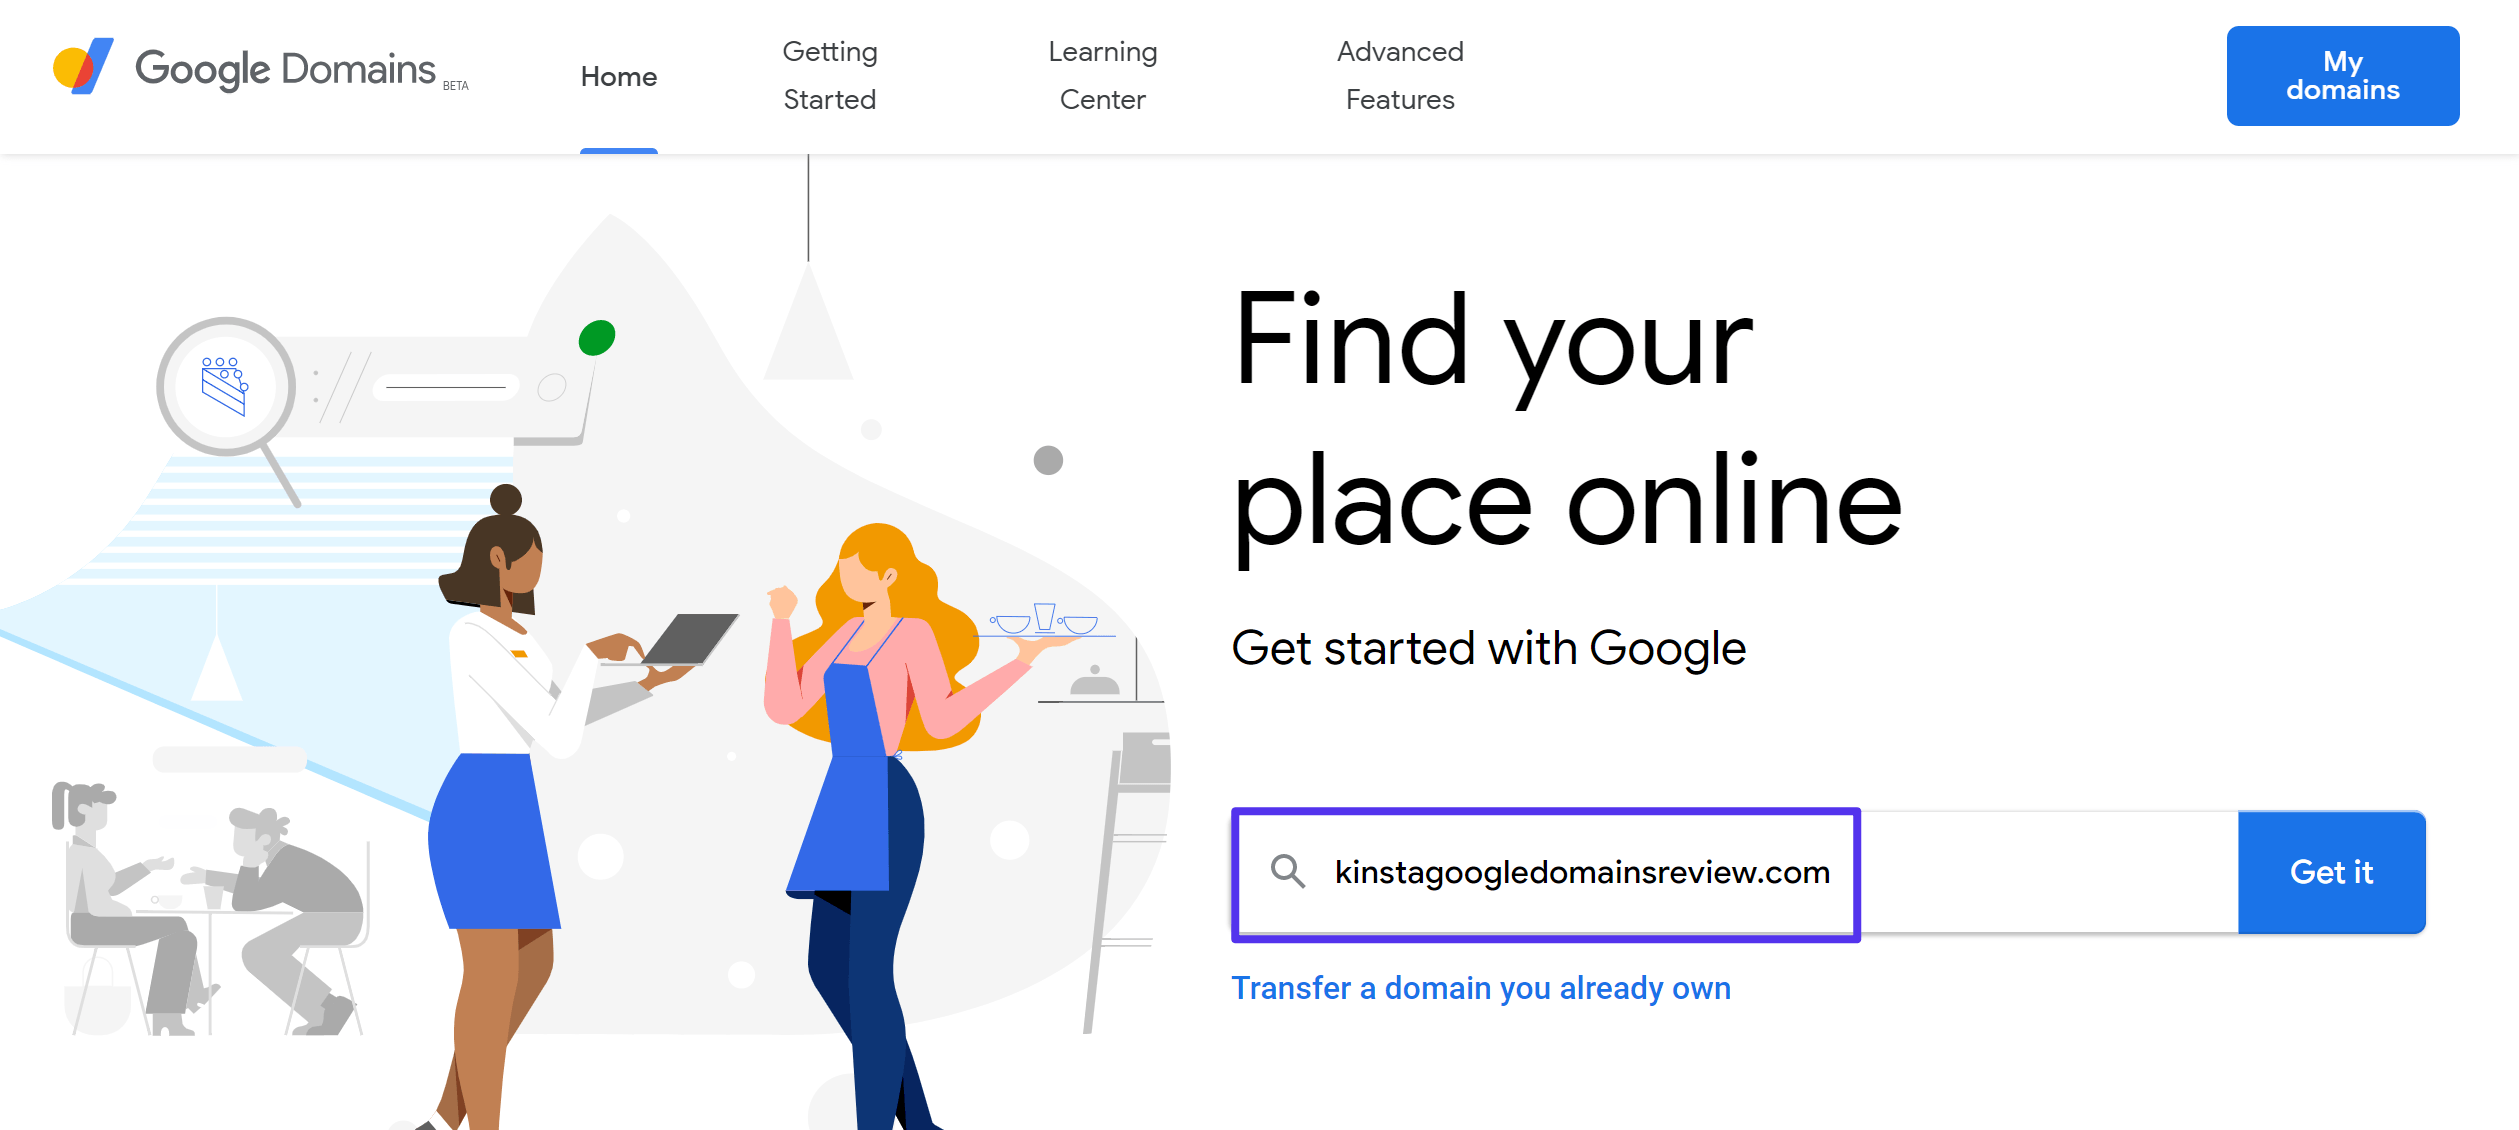 Recherchez votre domaine sur Google Domains